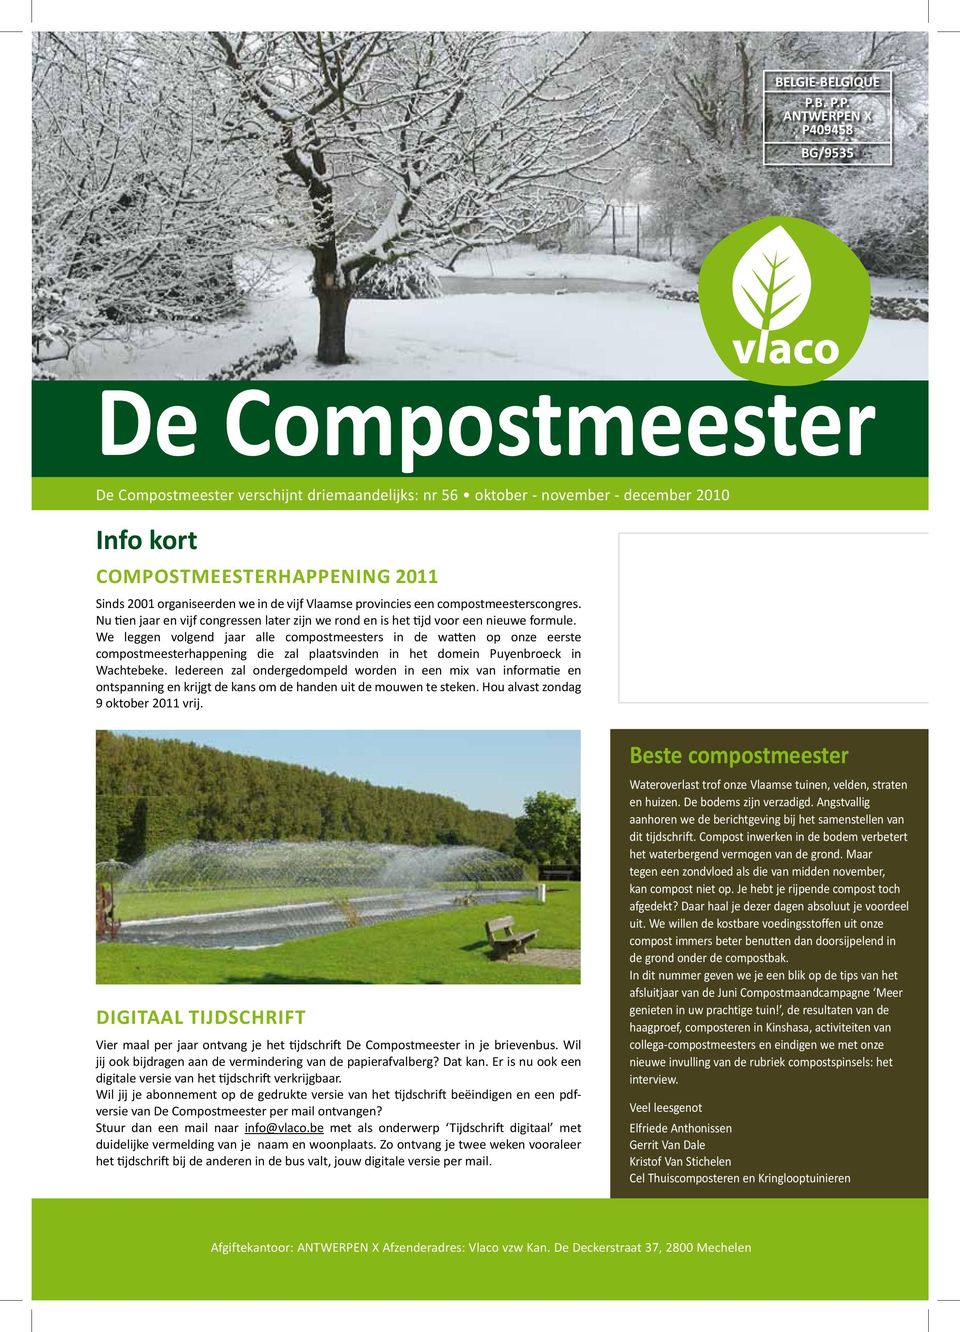 Compostmeesterhappening 2011 Sinds 2001 organiseerden we in de vijf Vlaamse provincies een compostmeesterscongres.